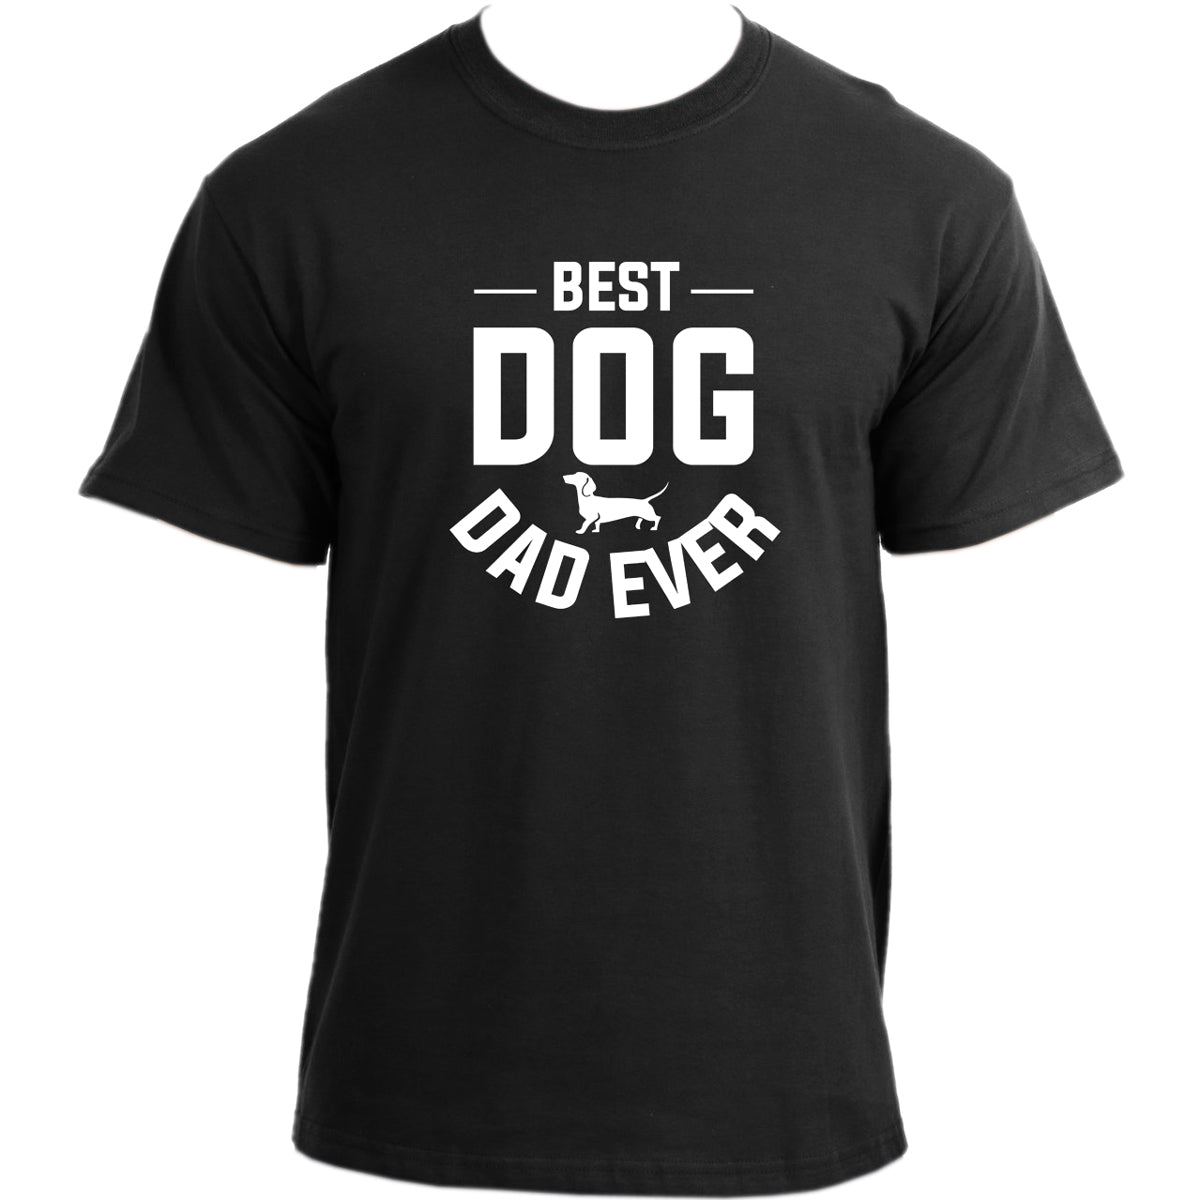 Best Dog Dad Ever T-shirt I Dog Owner TShirt I Dog Dad Funny T-shirts For Men